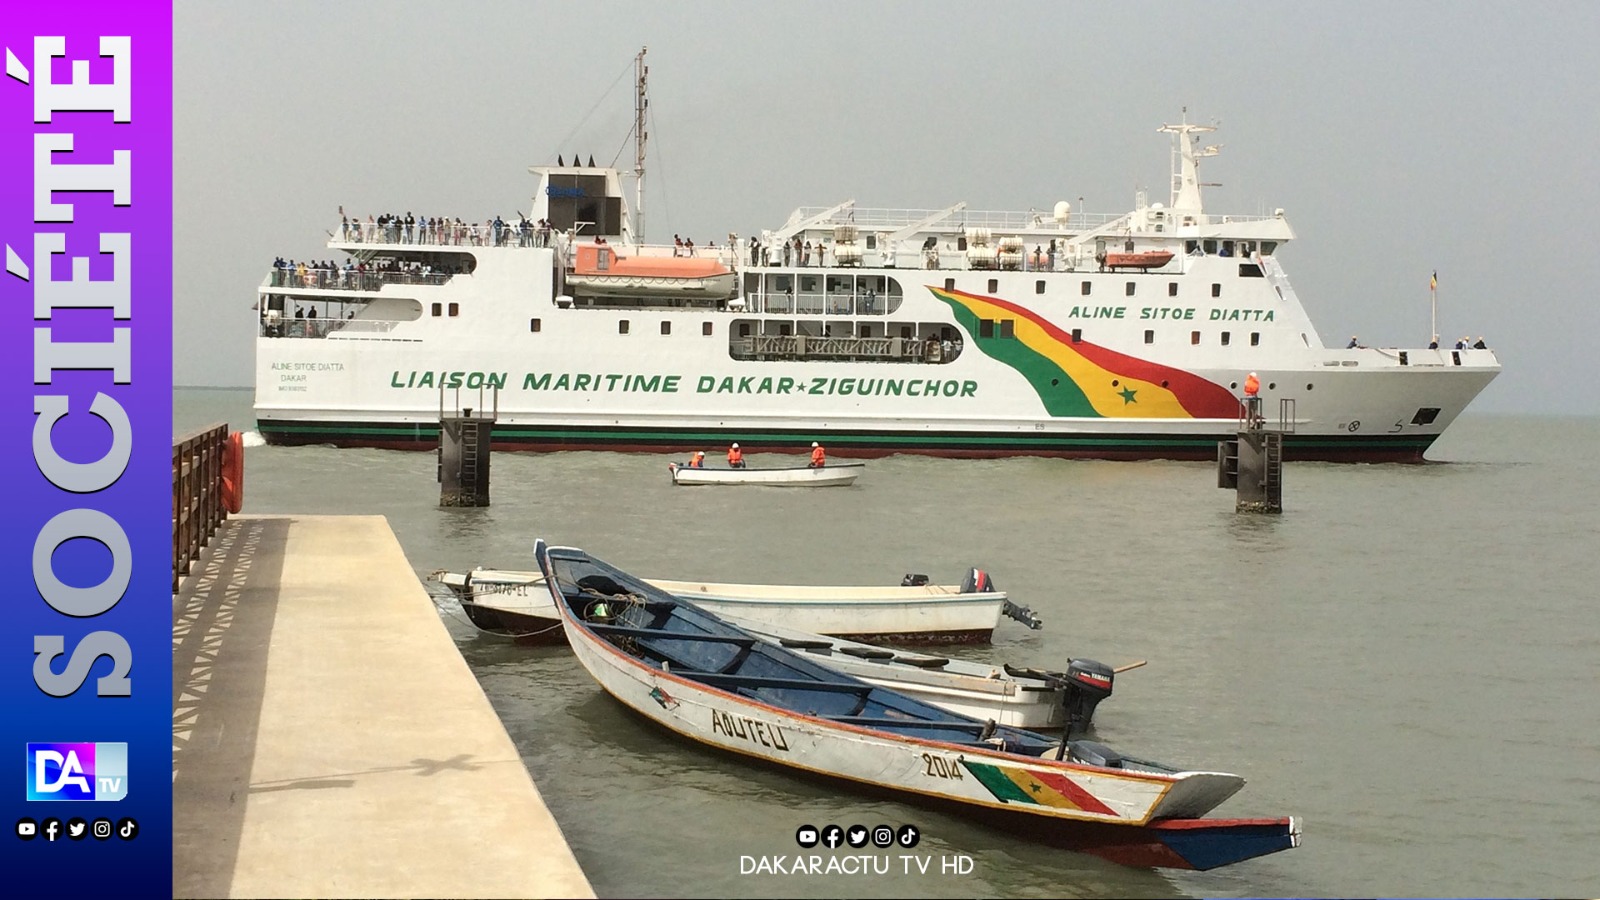 Reprise de la liaison maritime Dakar-Ziguinchor : Les bateaux en test !